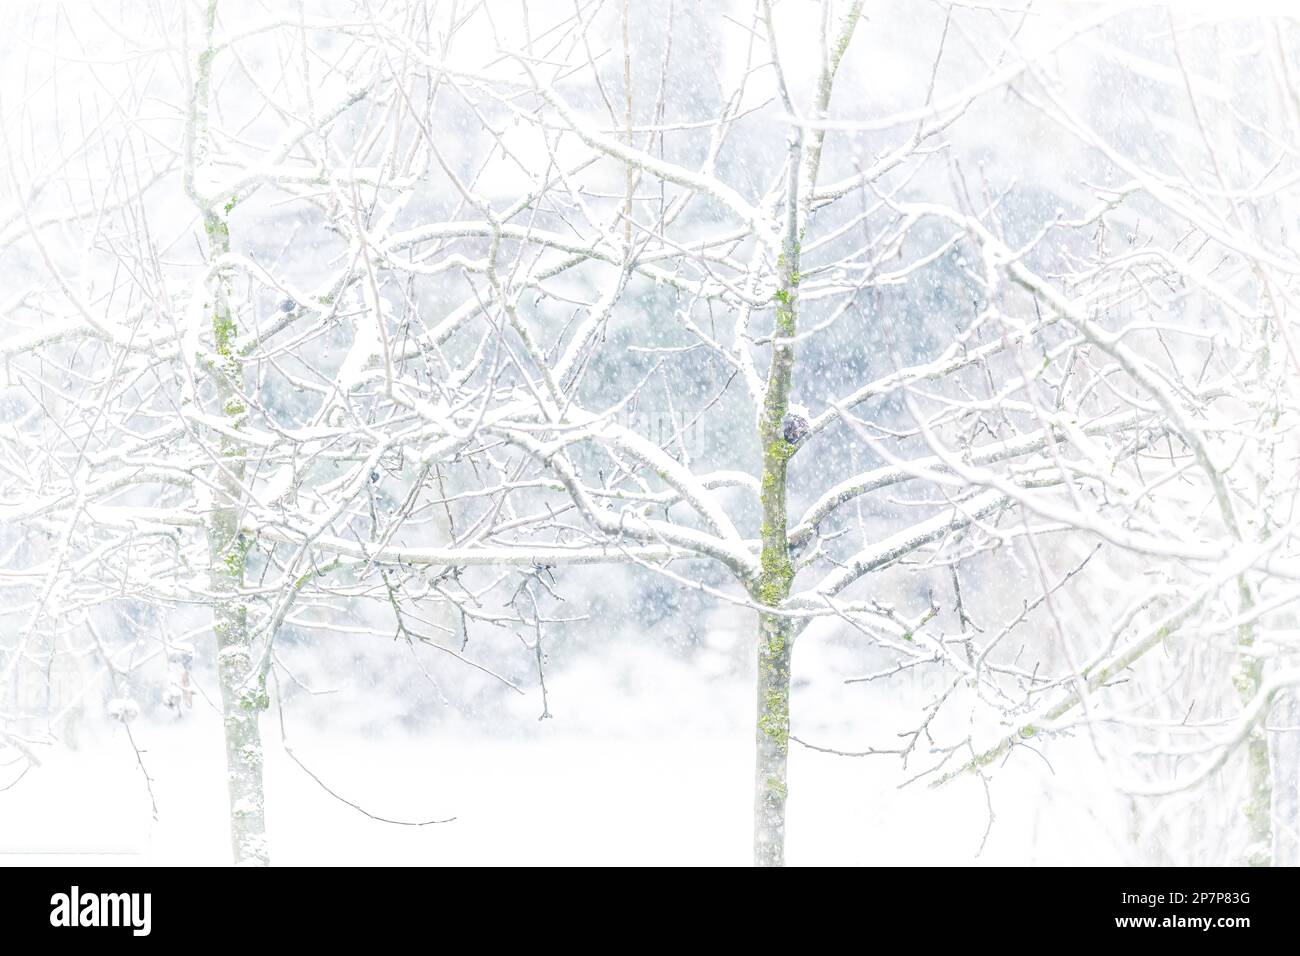 Bäume im Schnee, Foto von den Highkeys bei starkem Schneefall Stockfoto